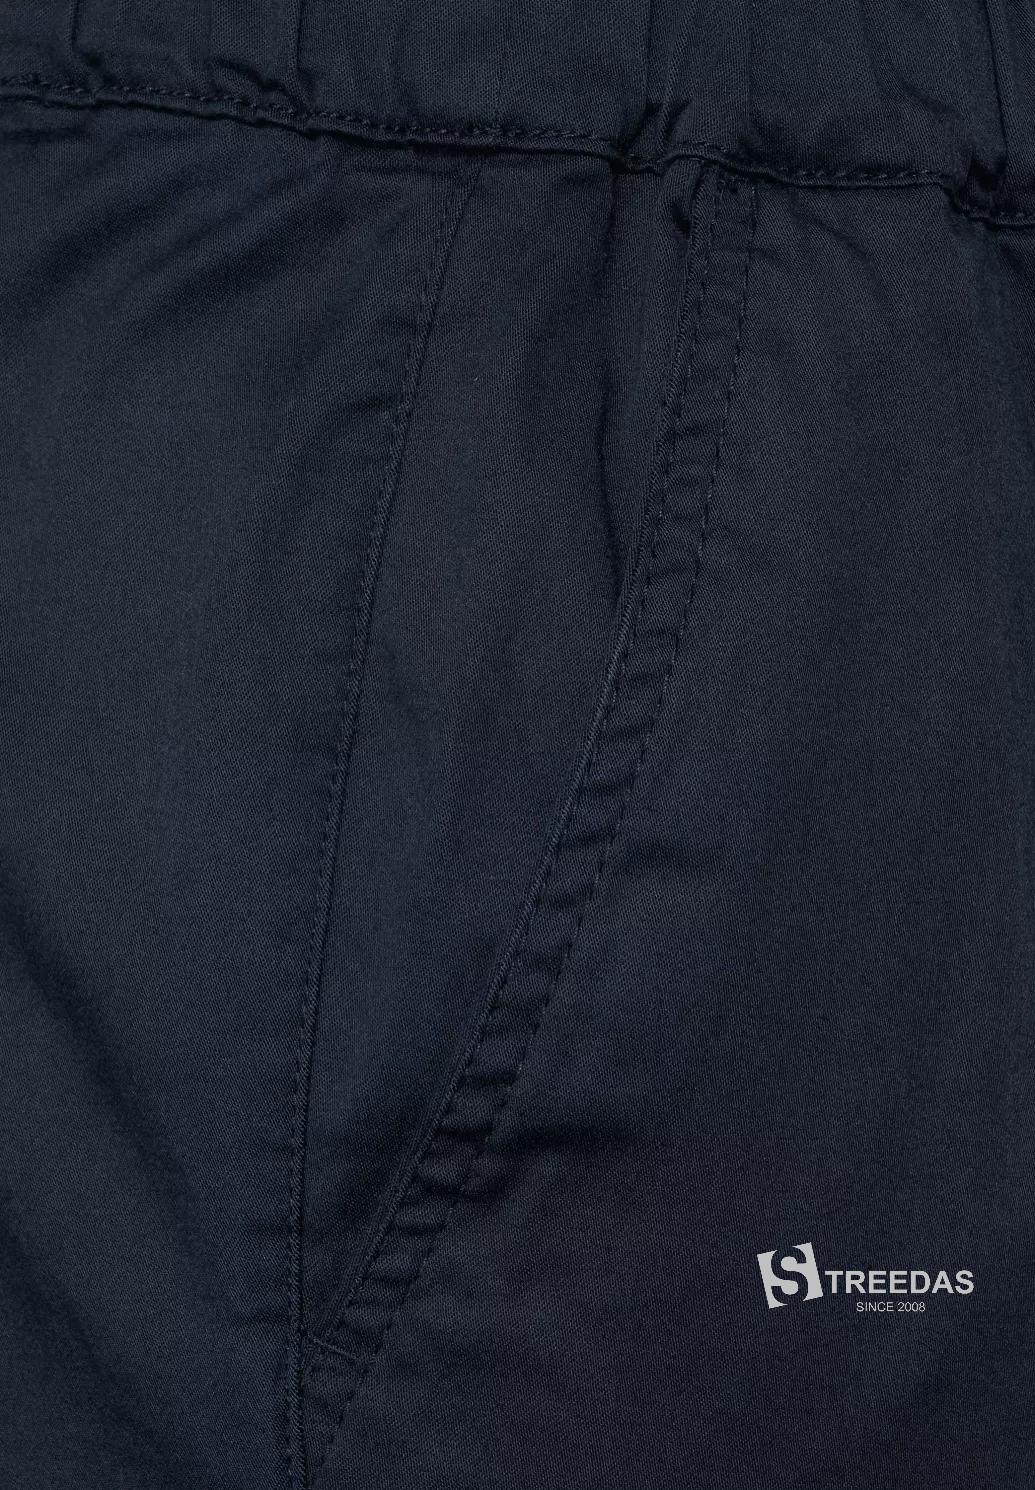 CECIL chino nohavice neformálneho strihu, CHELSEA, modré